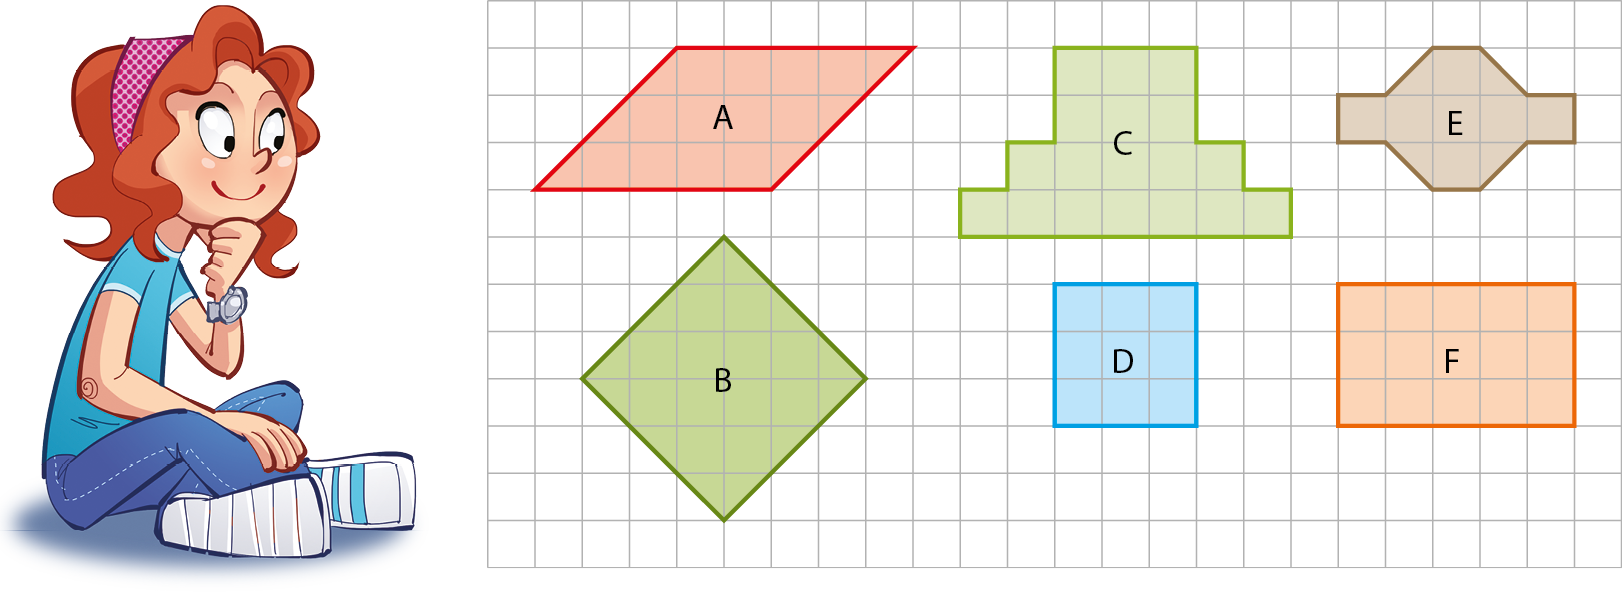 Ilustração. Menina branca de cabelo ruivo com uma faixa rosa, camiseta azul e calça. Ela está sentada no chão, com a mão esquerda no queixo, e olha para uma malha quadriculada ao lado com as seguintes figuras:

Figura A: paralelogramo vermelho, com lados equivalentes a: 5 quadradinhos e 3 diagonais de um quadradinho. 

Figura B: losango vertical verde, com cada lado equivalente a 3 diagonais de um quadradinho. 

Figura C: figura em verde claro, composta por uma fileira com 7 quadradinhos; acima, uma fileira com 5 quadradinhos; e, acima, duas fileiras com 3 quadradinhos cada. 

Figura D: quadrado azul com cada lado equivalente a 3 quadradinhos.

Figura E: figura em marrom, composta por um hexágono de lado medindo 1 quadradinho e por dois quadradinhos, um à esquerda e um à direita do hexágono.

Figura F: retângulo laranja com lados medindo 3 por 5 quadradinhos.